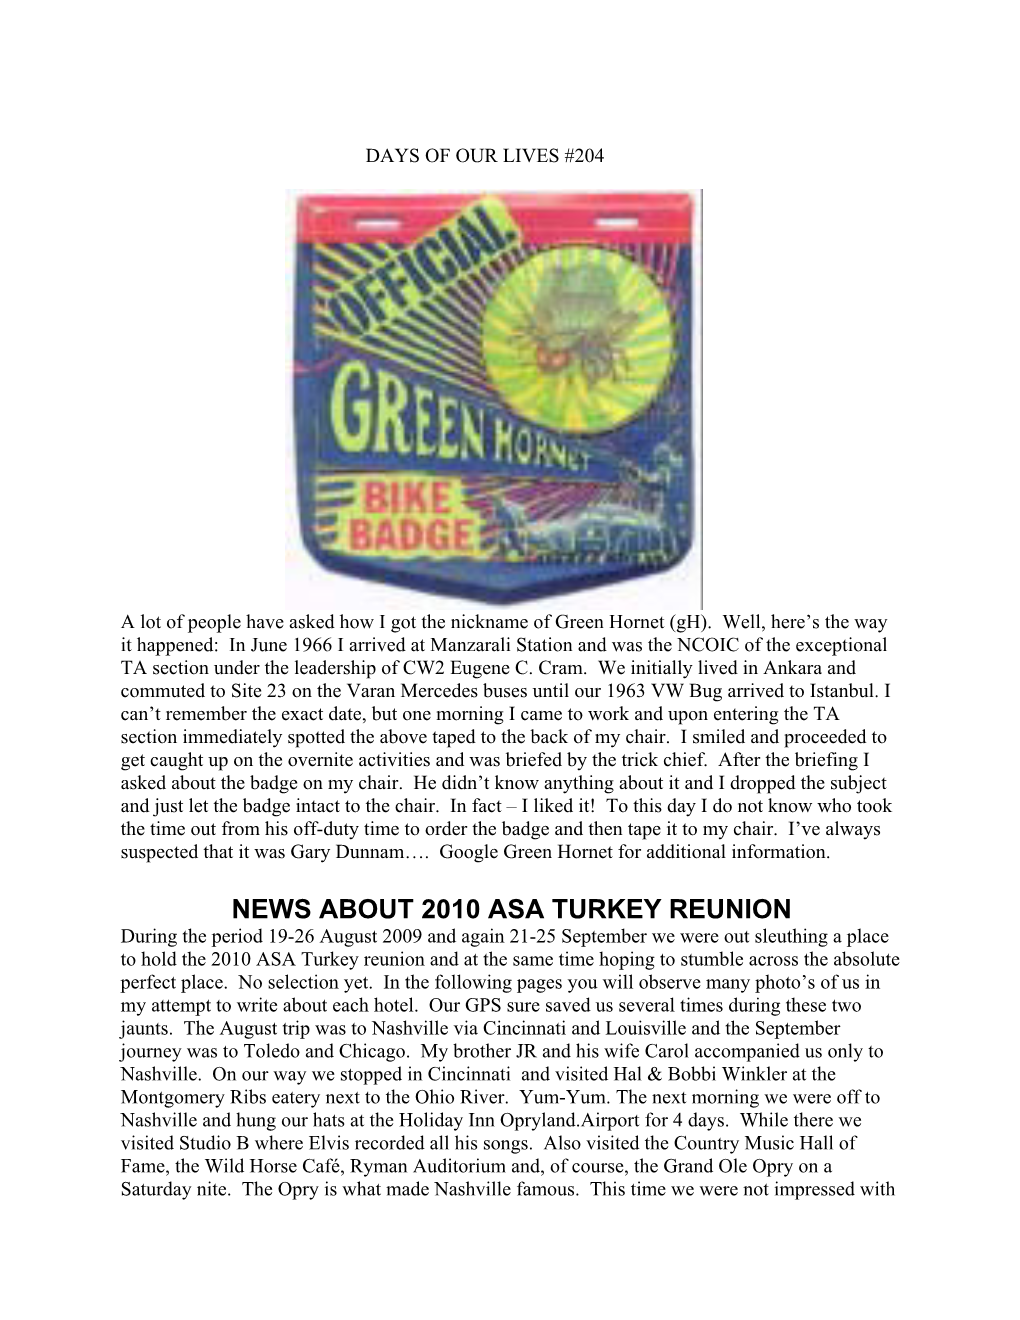 News About 2010 Asa Turkey Reunion